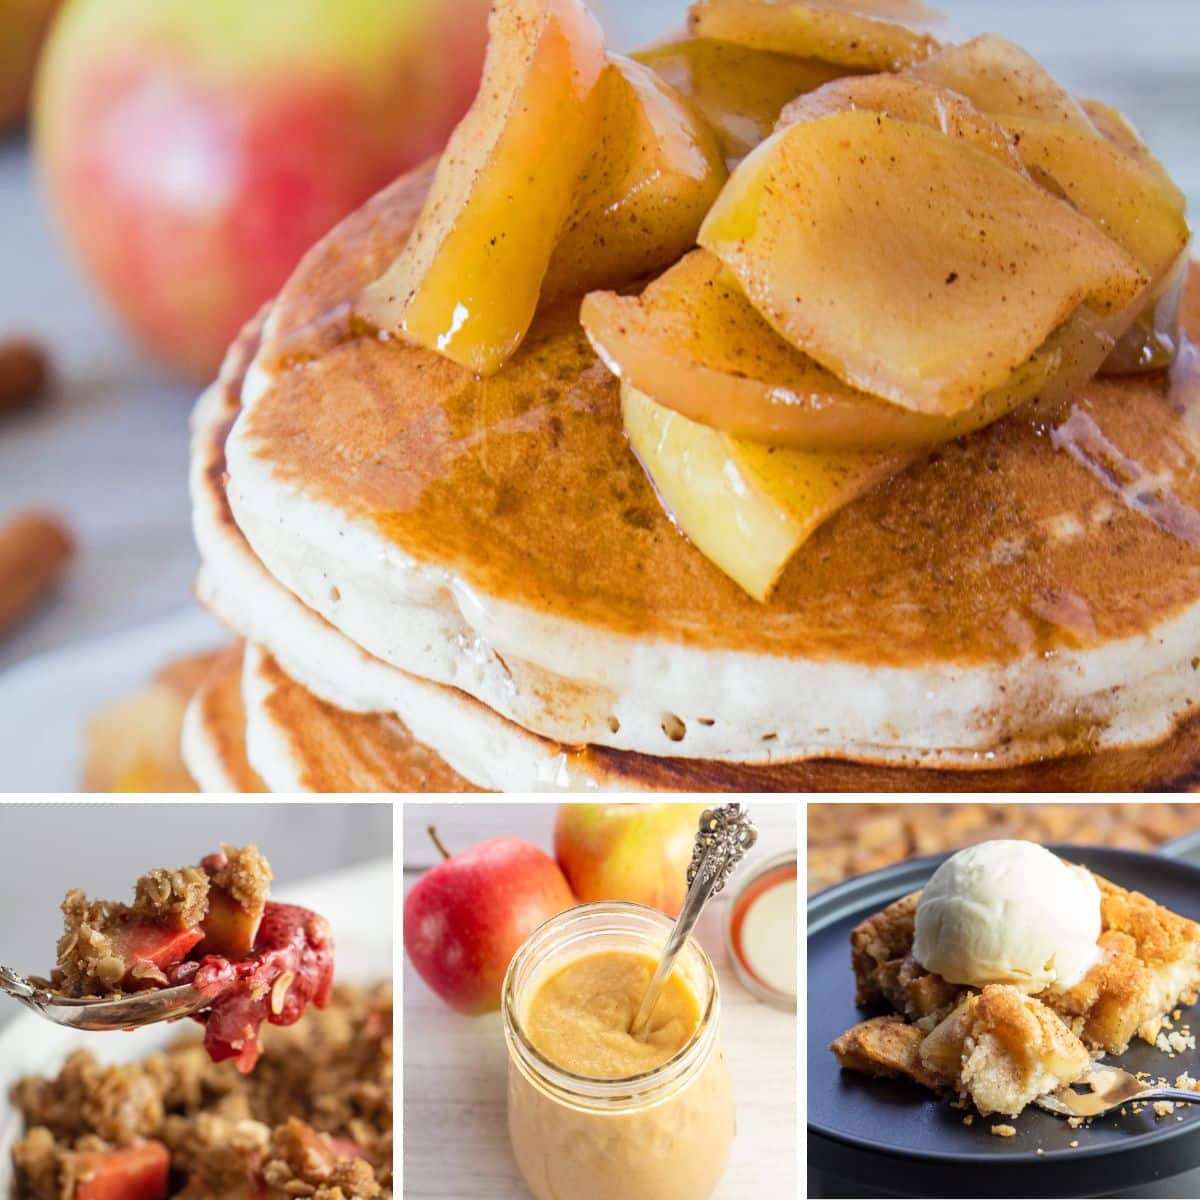 कोलाज छवि में 4 व्यंजनों की विशेषता वाले सप्ताह के किसी भी दिन बनाने और आनंद लेने के लिए सर्वश्रेष्ठ सेब व्यंजन।